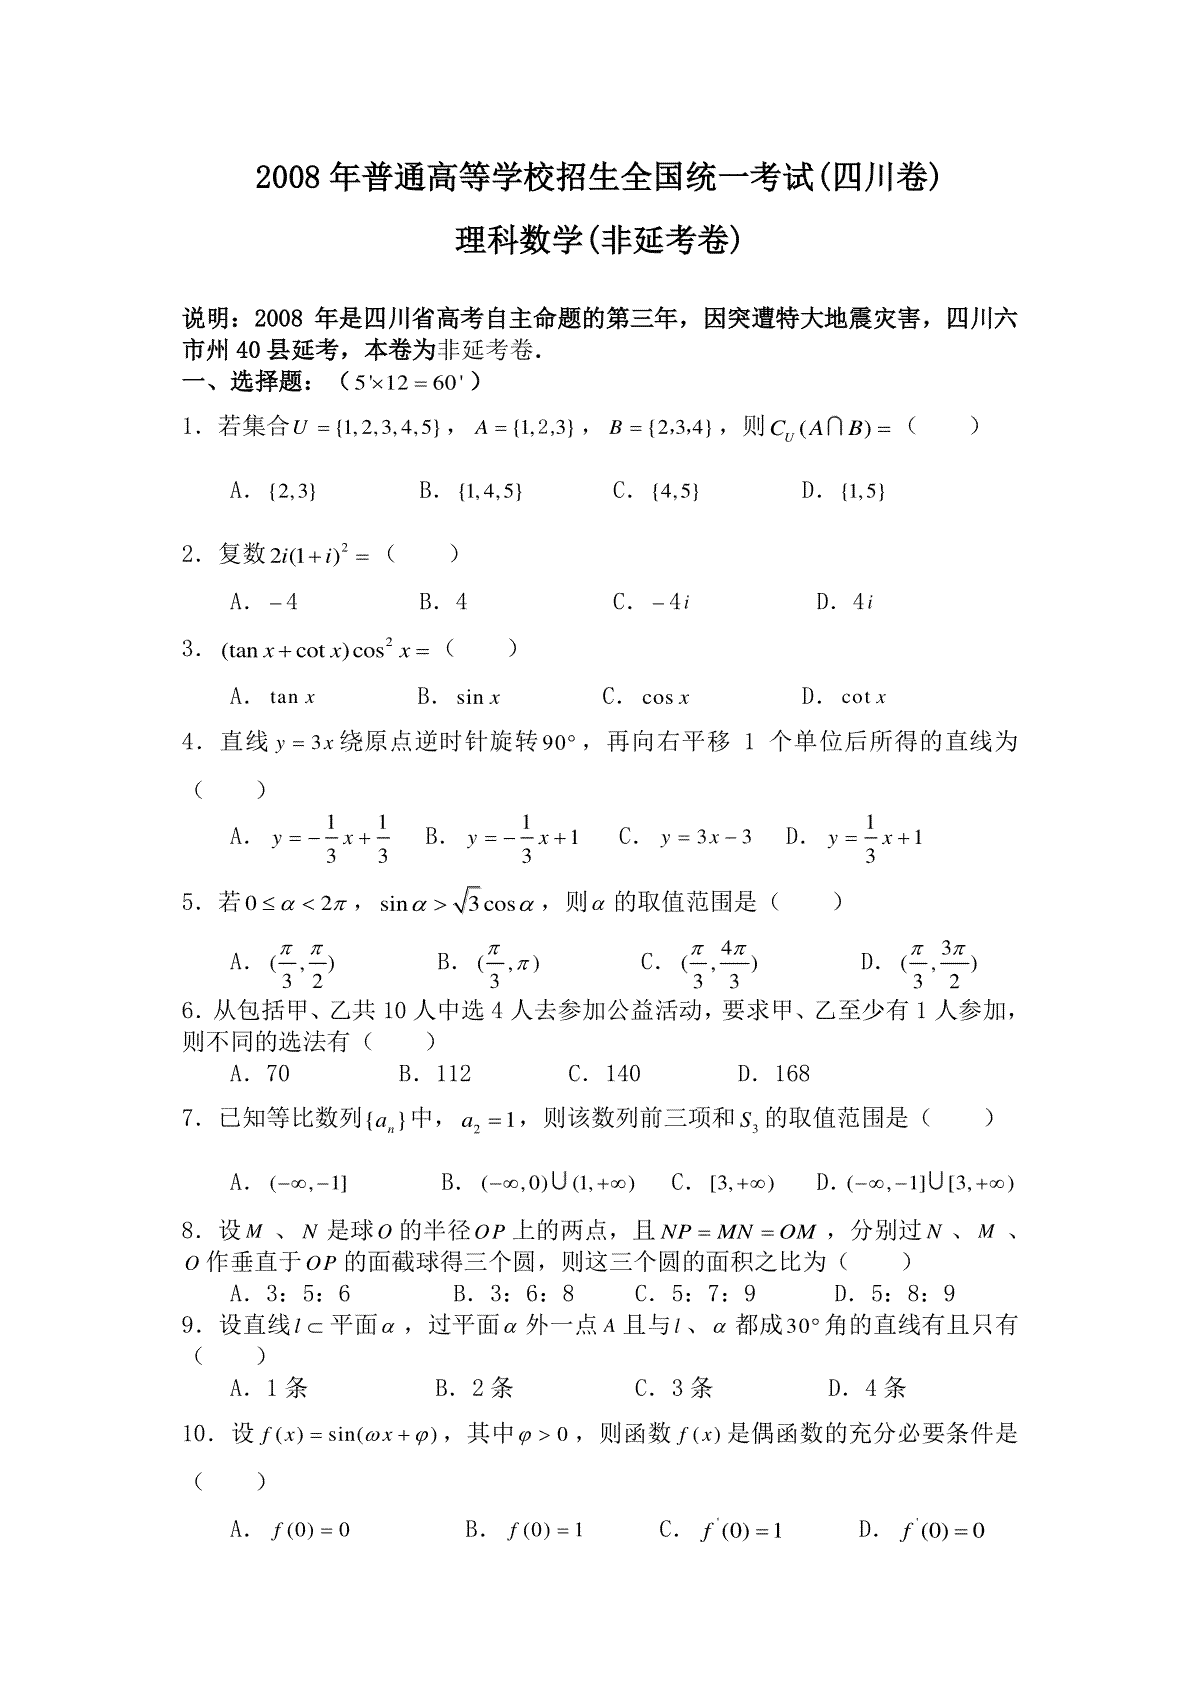 2008年四川高考理科数学(非延考区)试题及答案详解